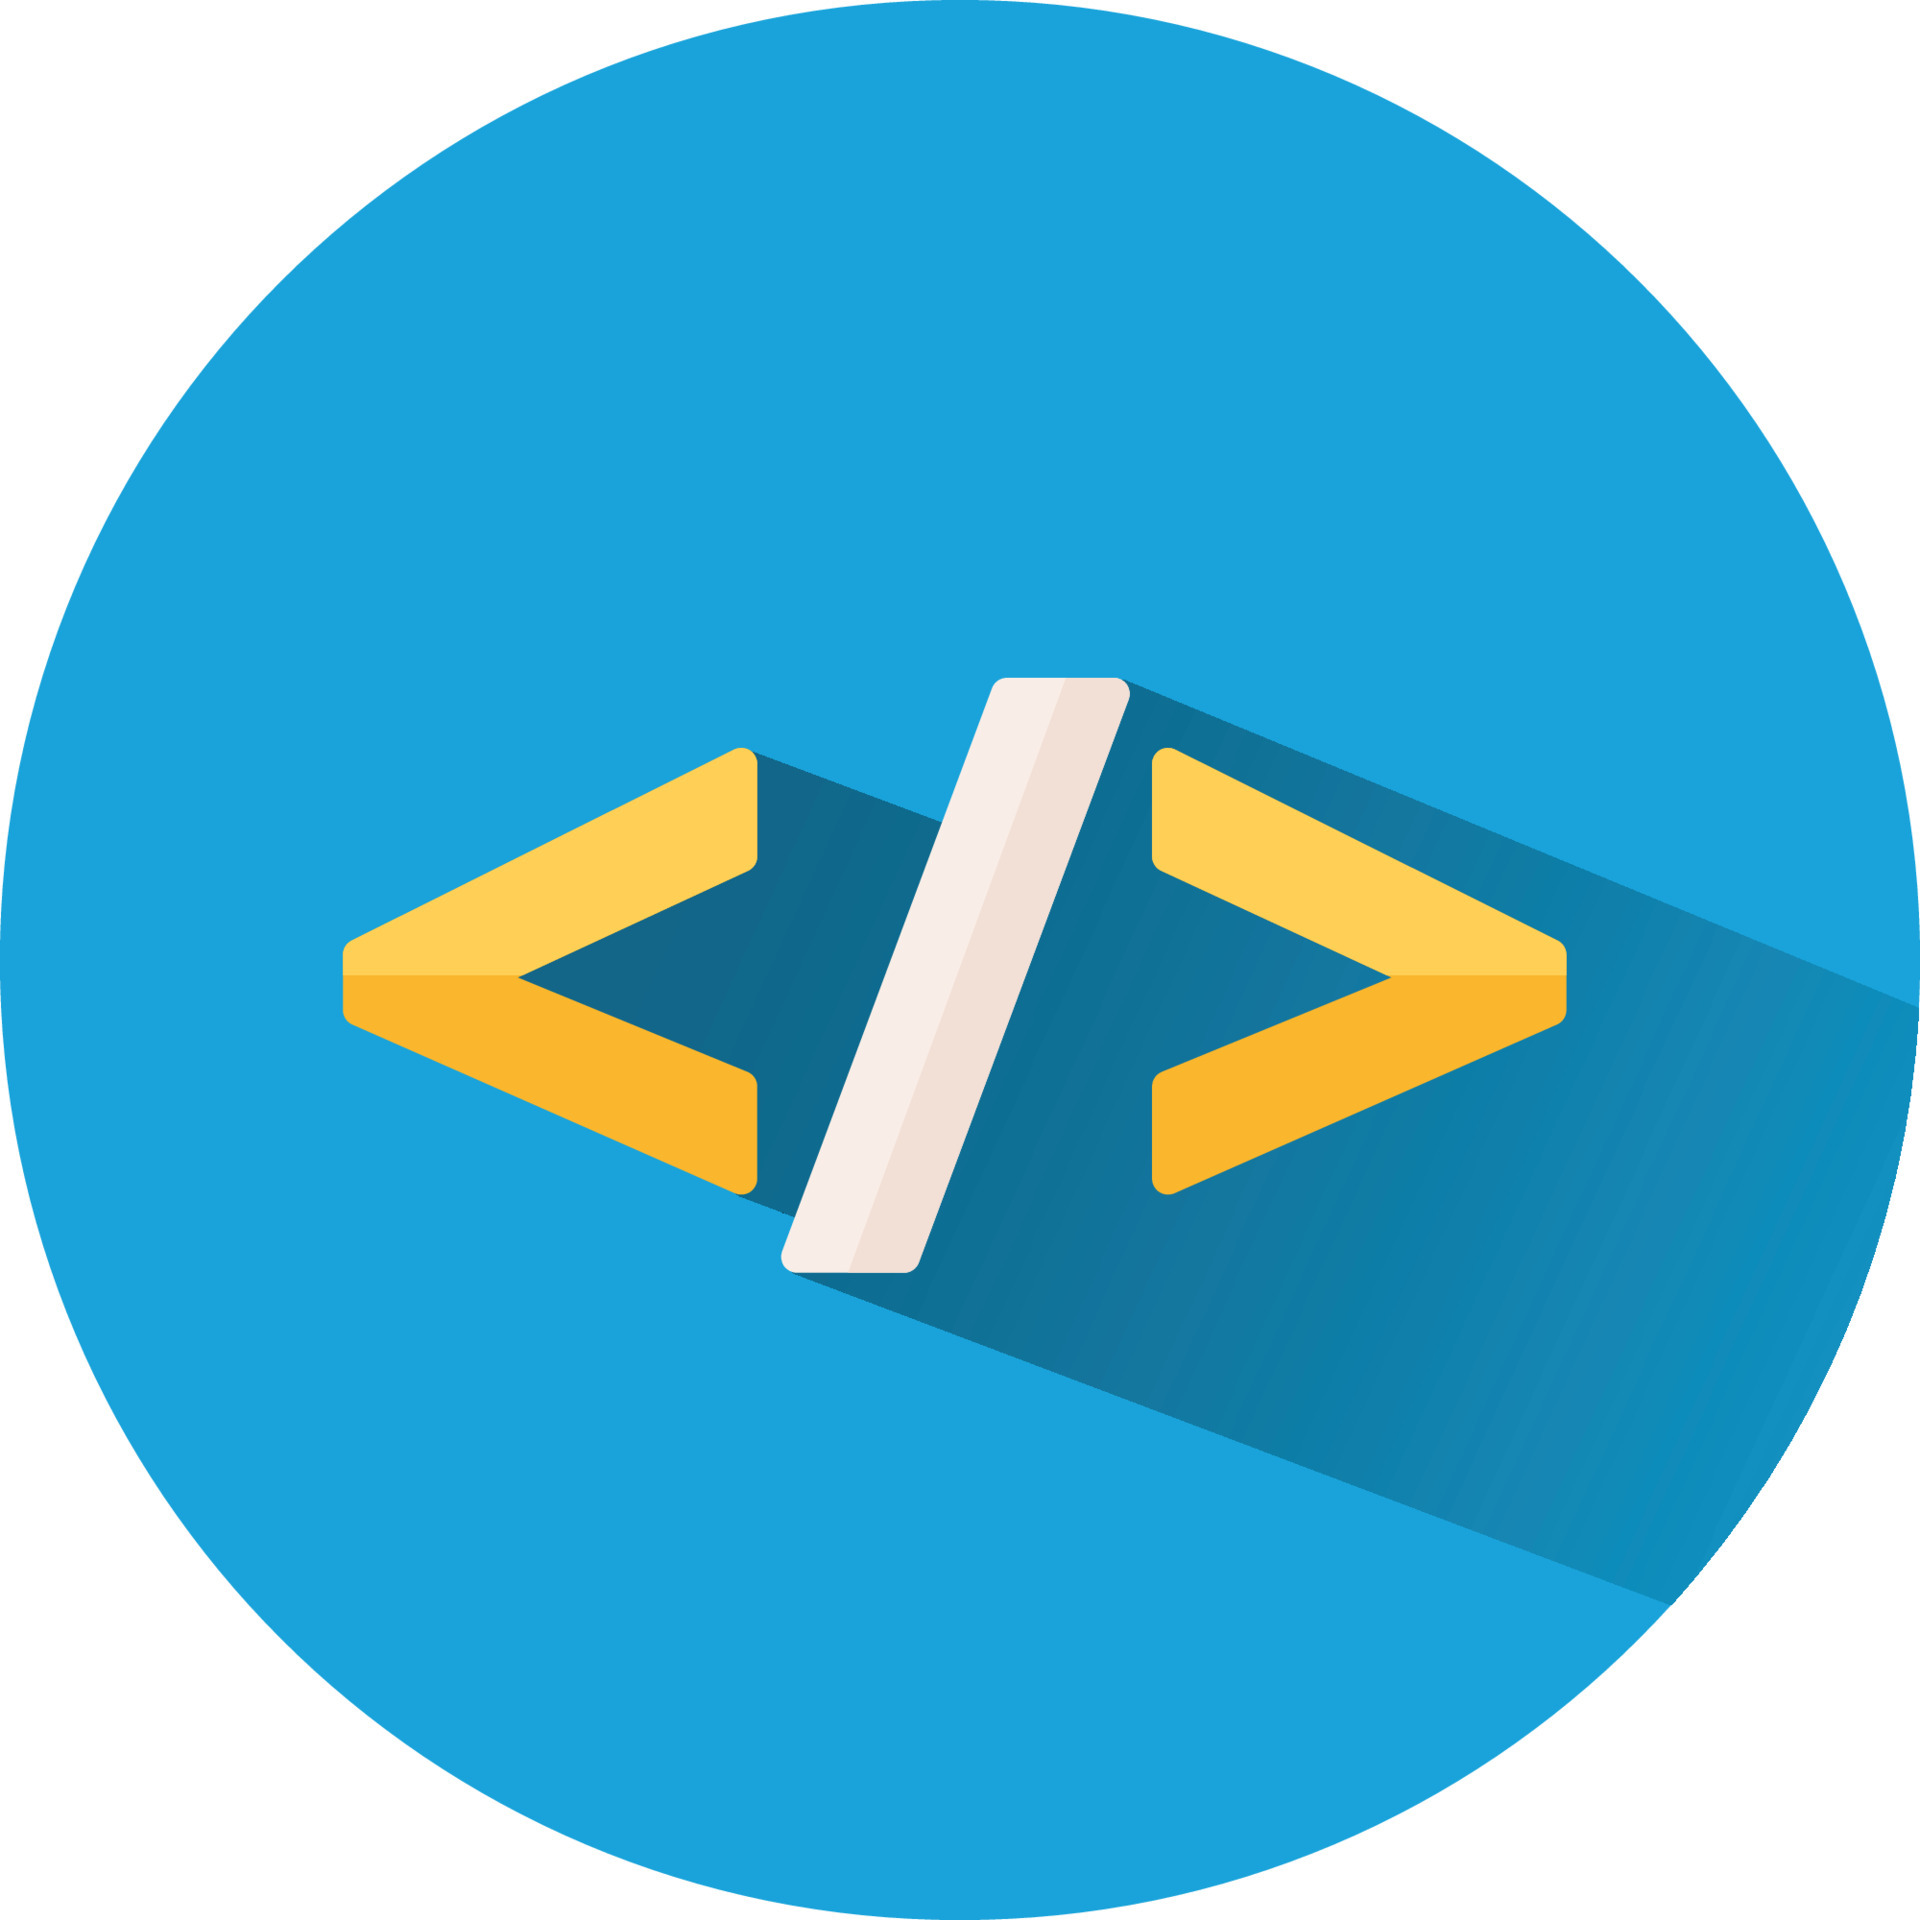 Code icon. Программирование иконка. Программирование логотип. Веб программирование иконка. Логотип программиста.